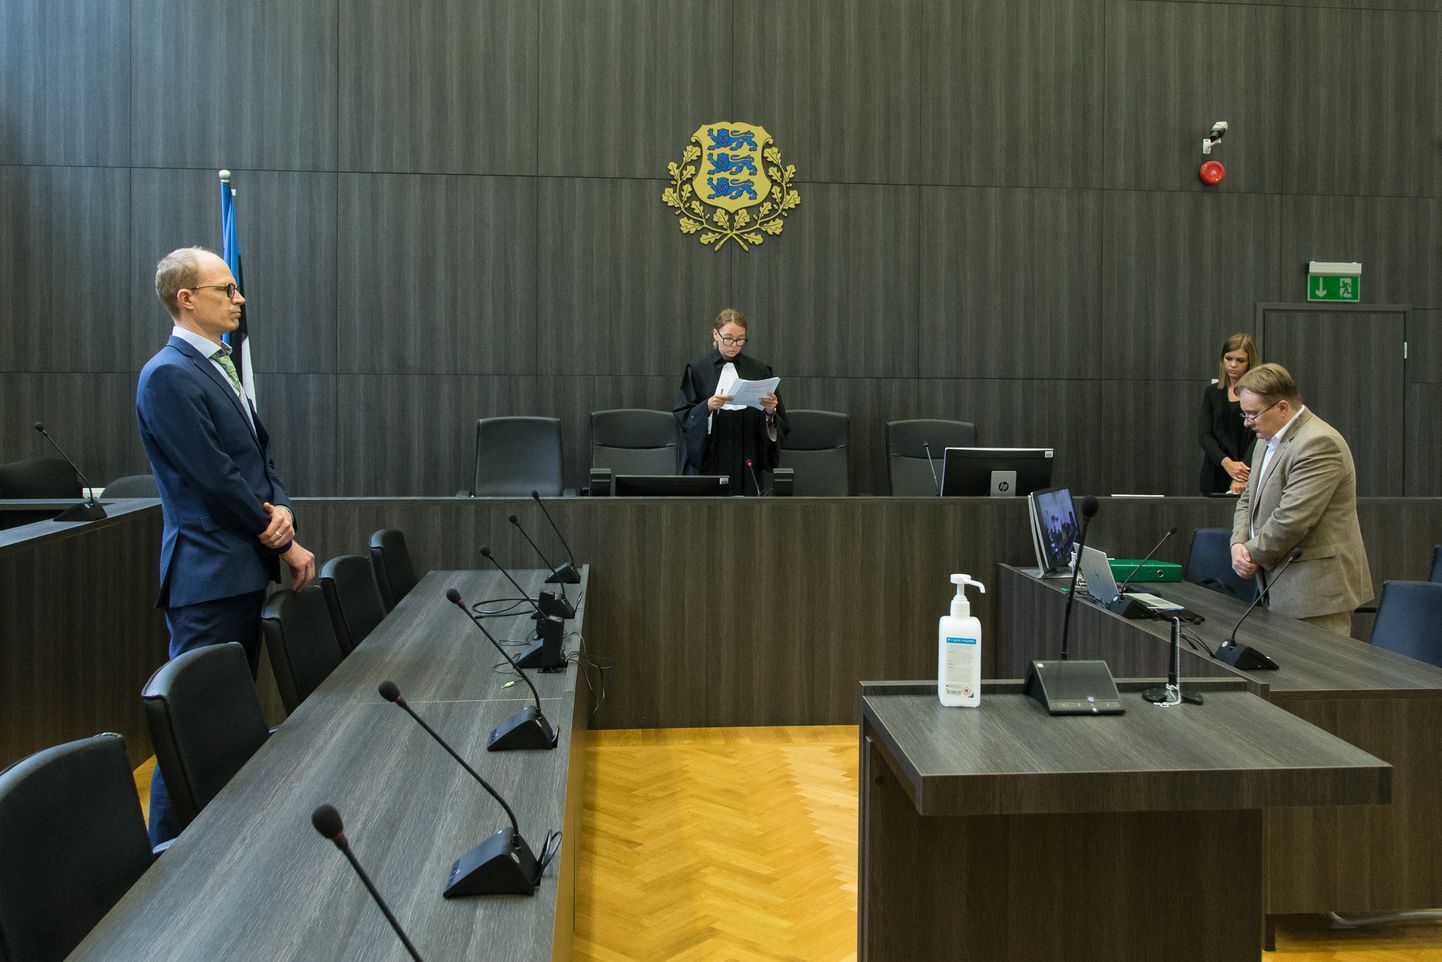 Судебная сага еще не закончилась и может быть продолжена еще в этом году в Тартуском окружном суде.